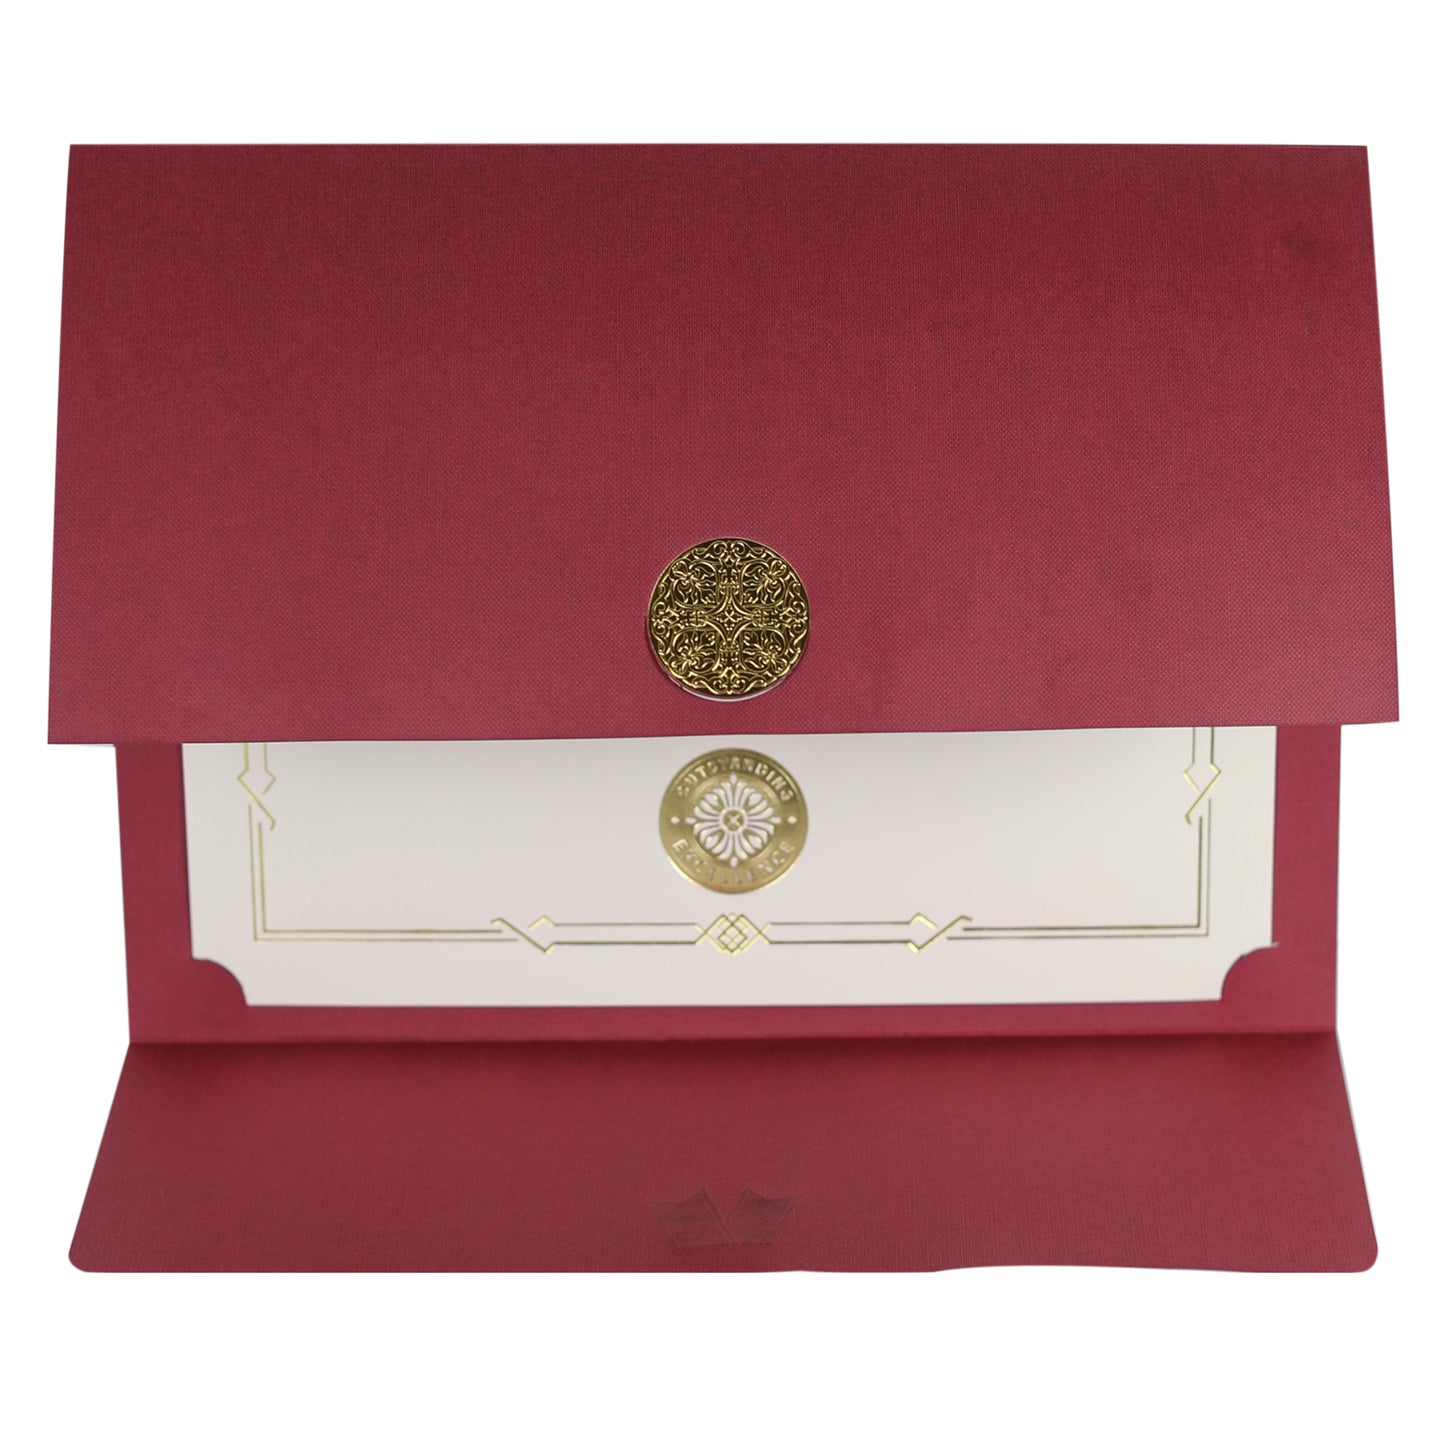 St. James® Porte-certificats/Couvertures de documents/Porte-diplômes, Bordeaux, Sceau d'or avec ruban bleu, Paquet de 5, 83817